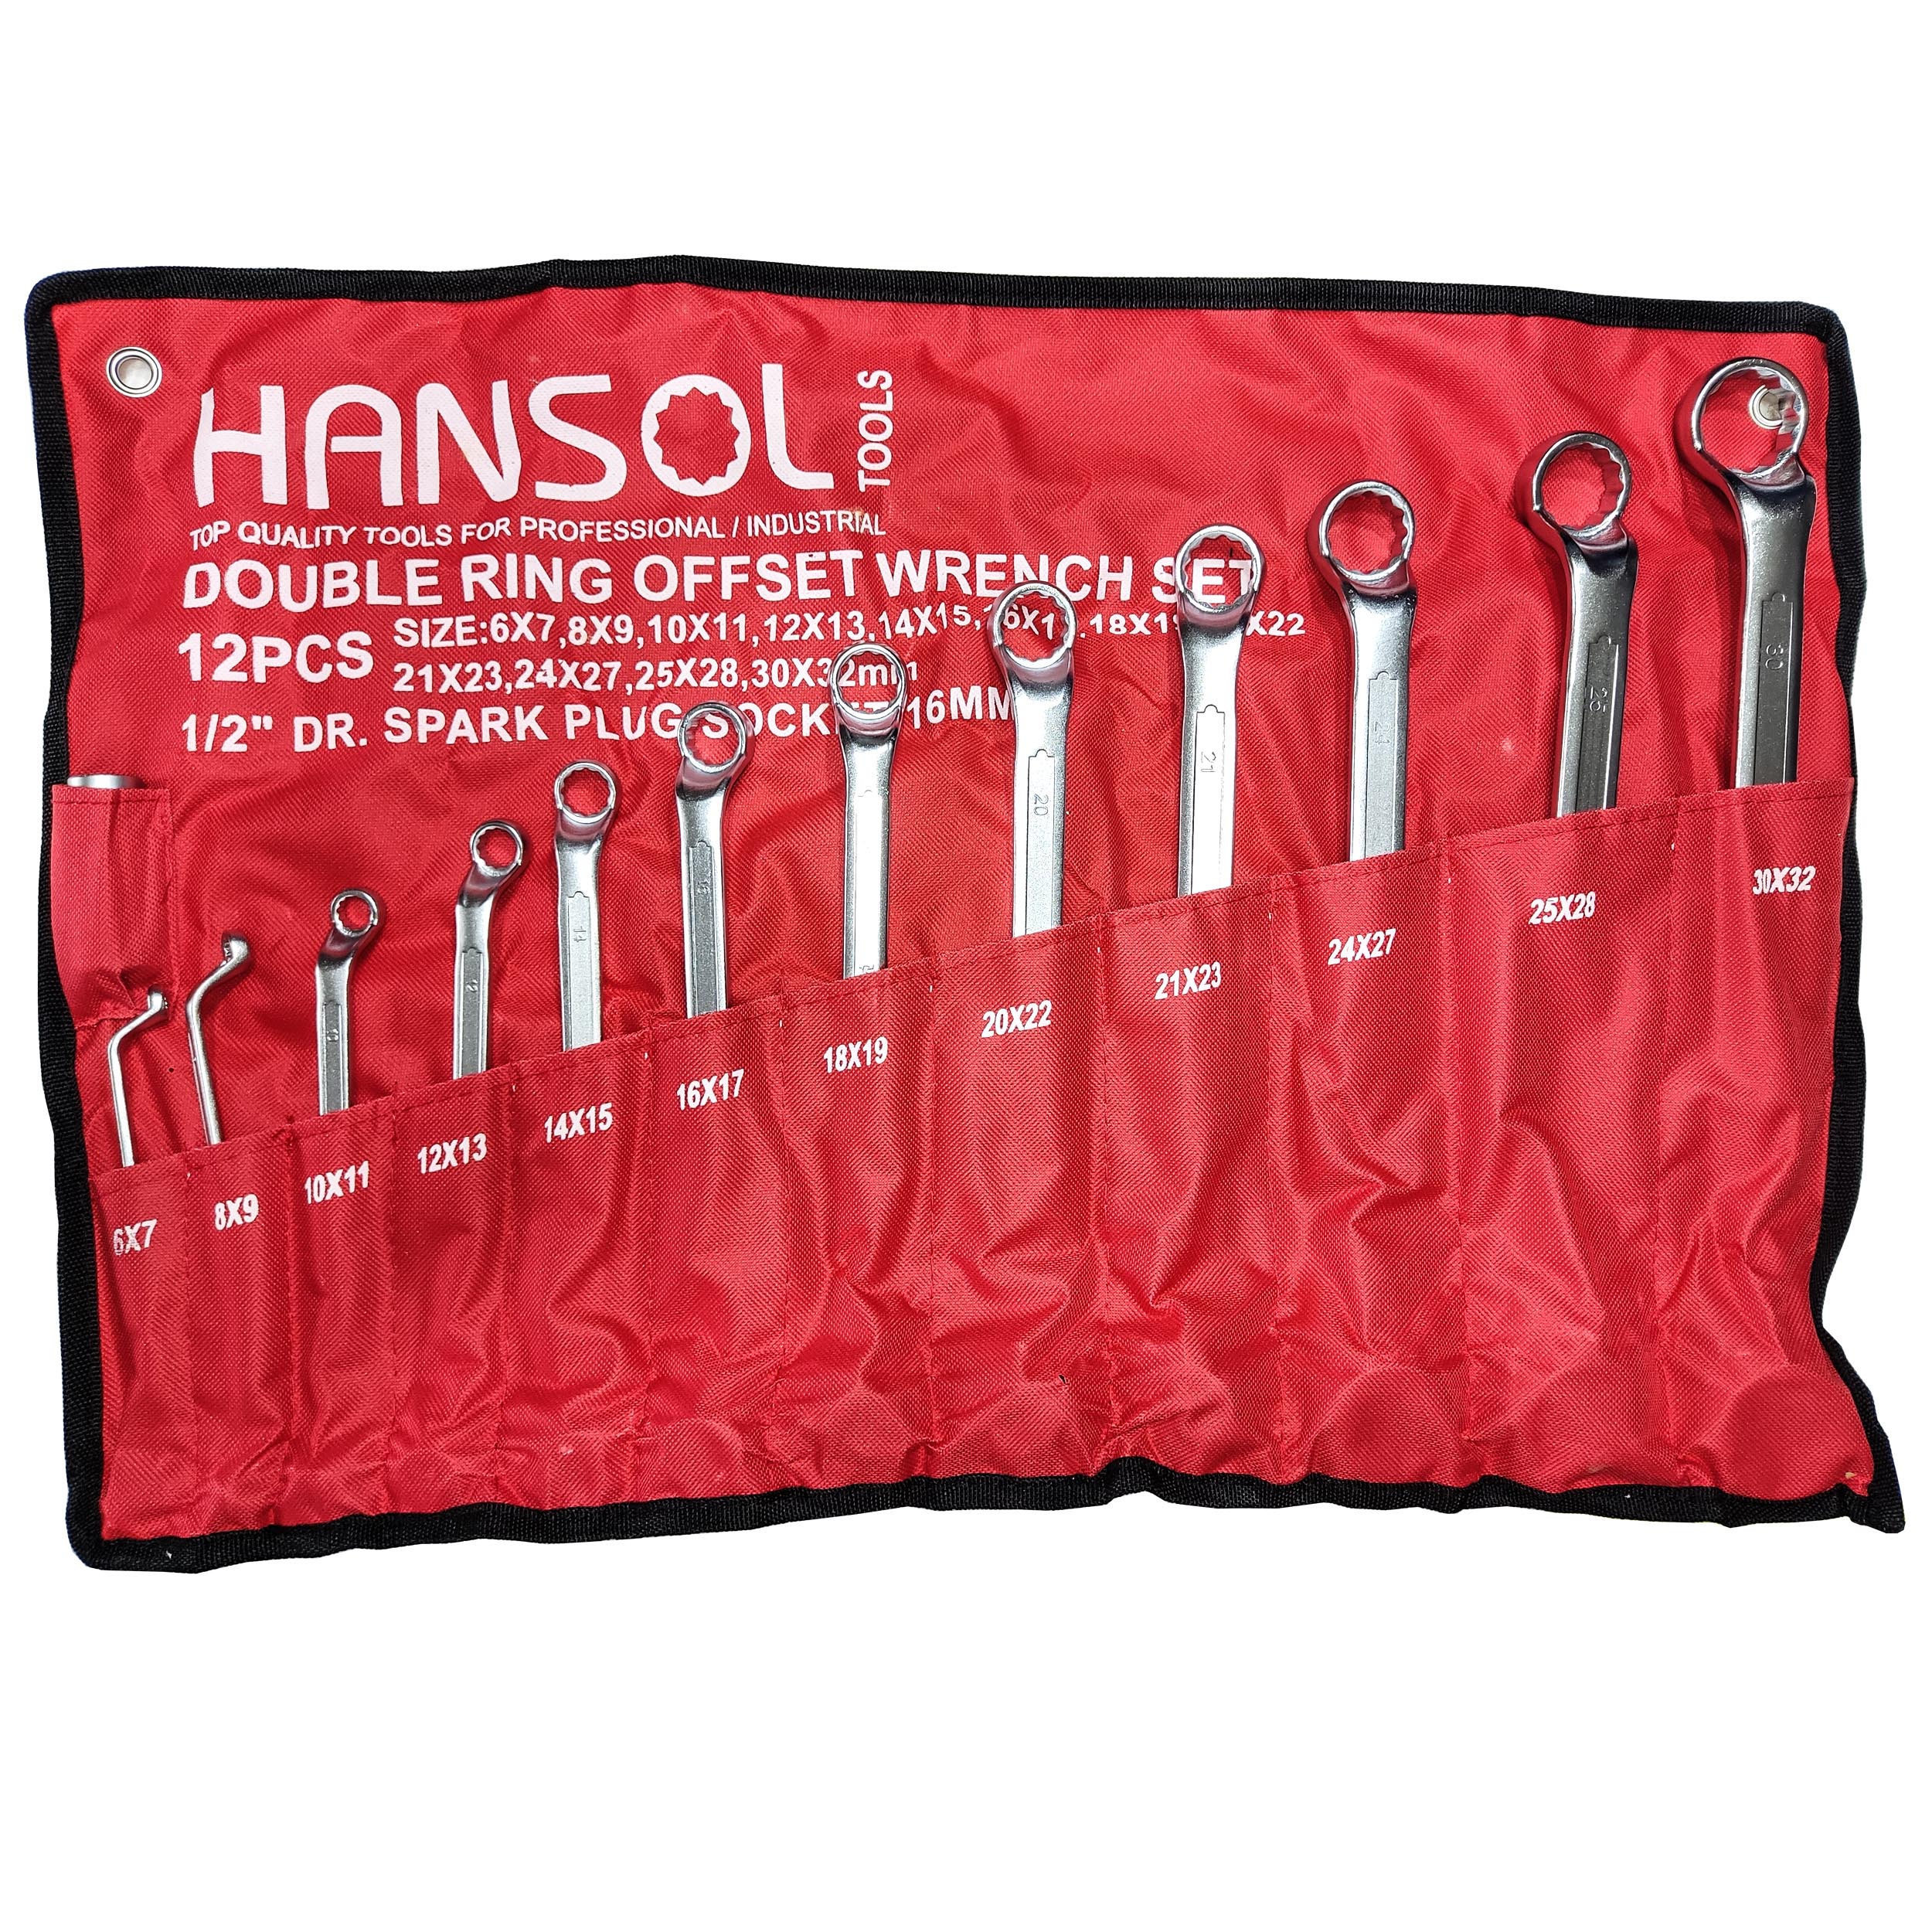 نکته خرید - قیمت روز آچار دو سر رینگی هانسول مدل HANSOL - 12 مجموعه 13 عددی خرید